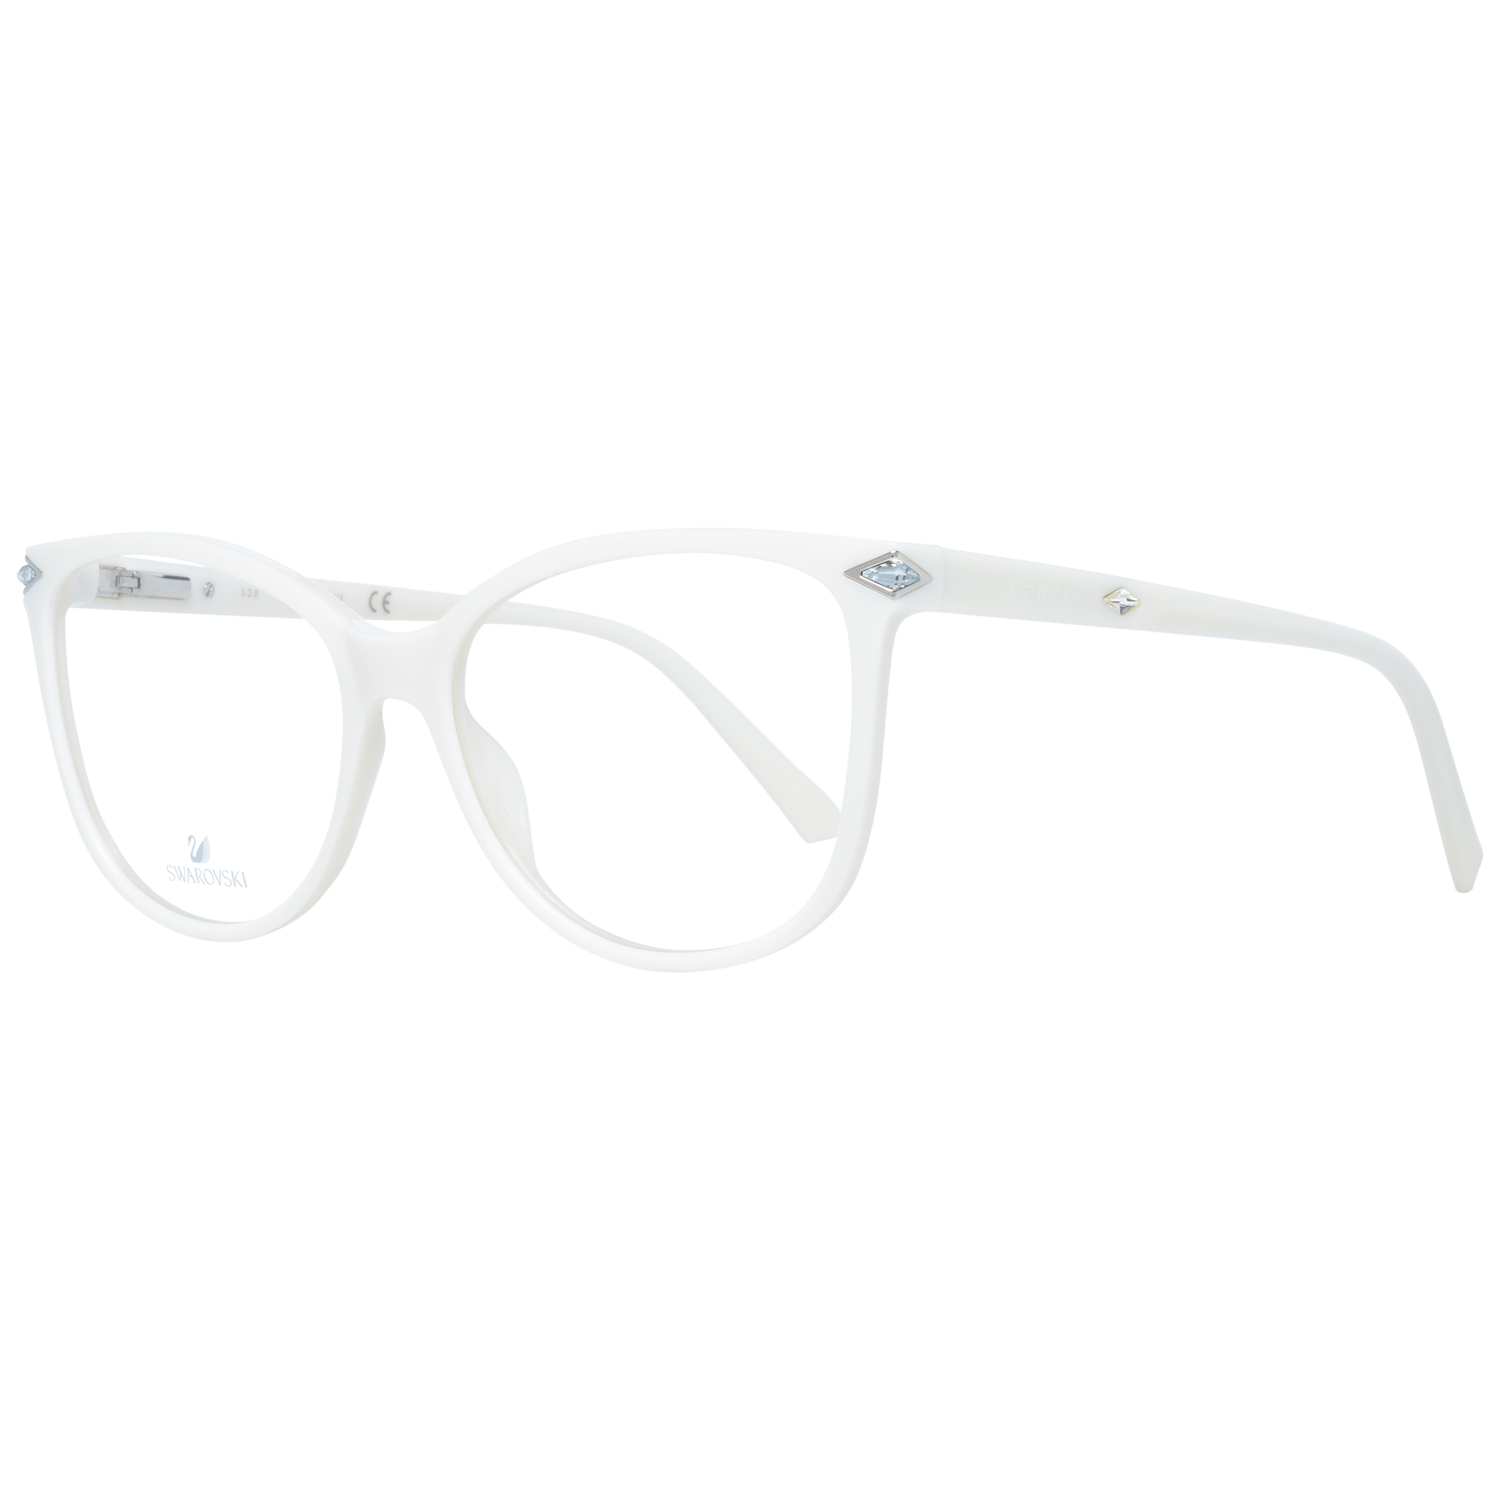 Swarovski Frames Swarovski Women Glasses Optical Frame SK5283 021 54 Eyeglasses Eyewear UK USA Australia 